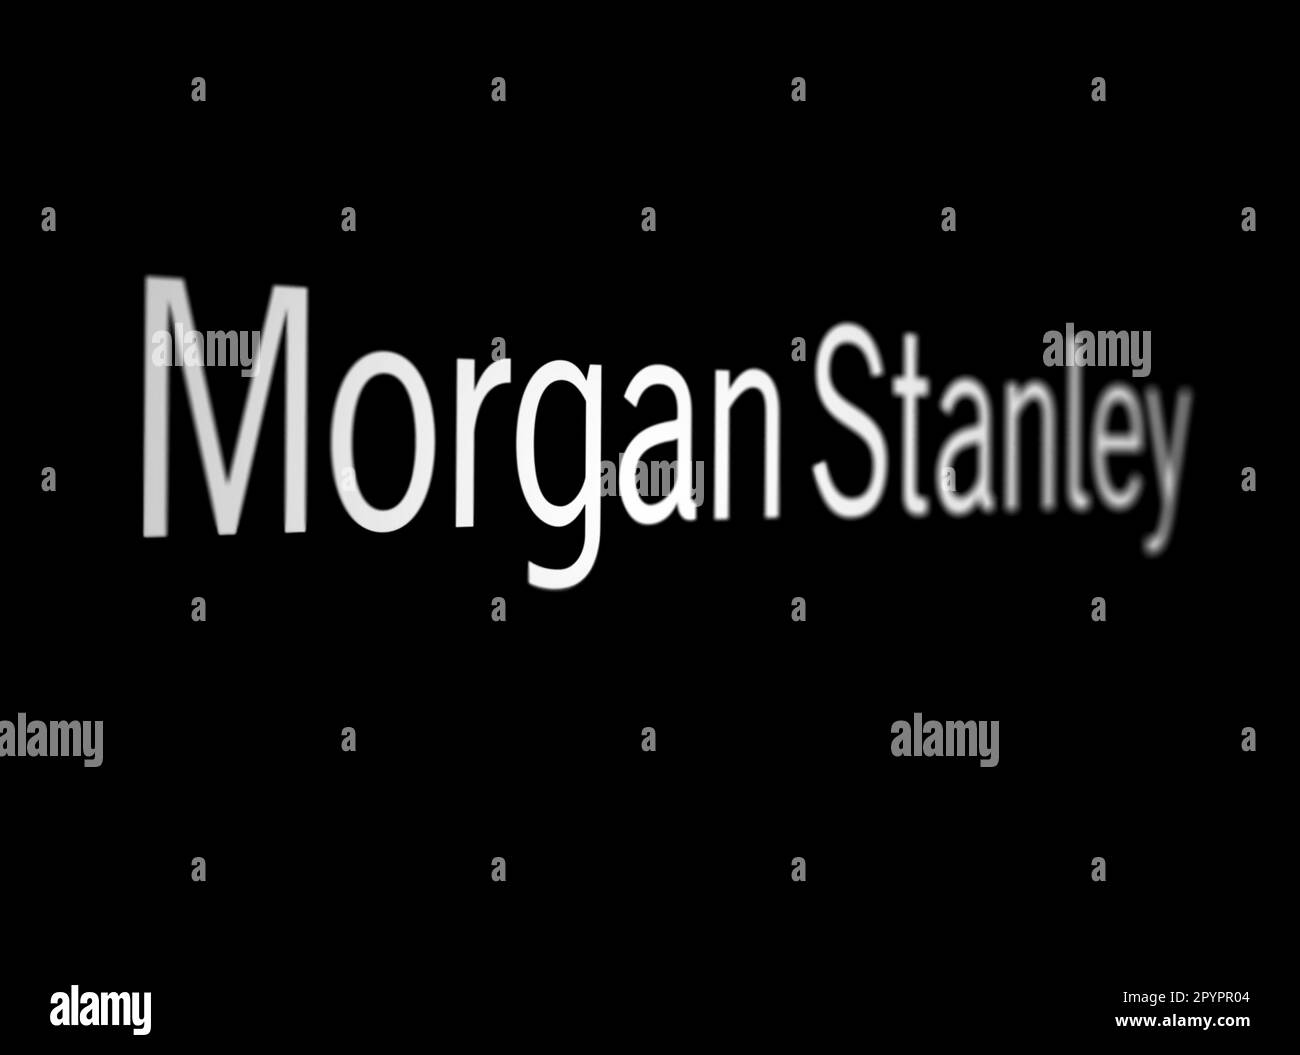 New York City, États-Unis, mars 2023 : logo Morgan Stanley blanc sur fond noir. Morgan Stanley est une banque d'investissement multinationale américaine. Illustrat Banque D'Images